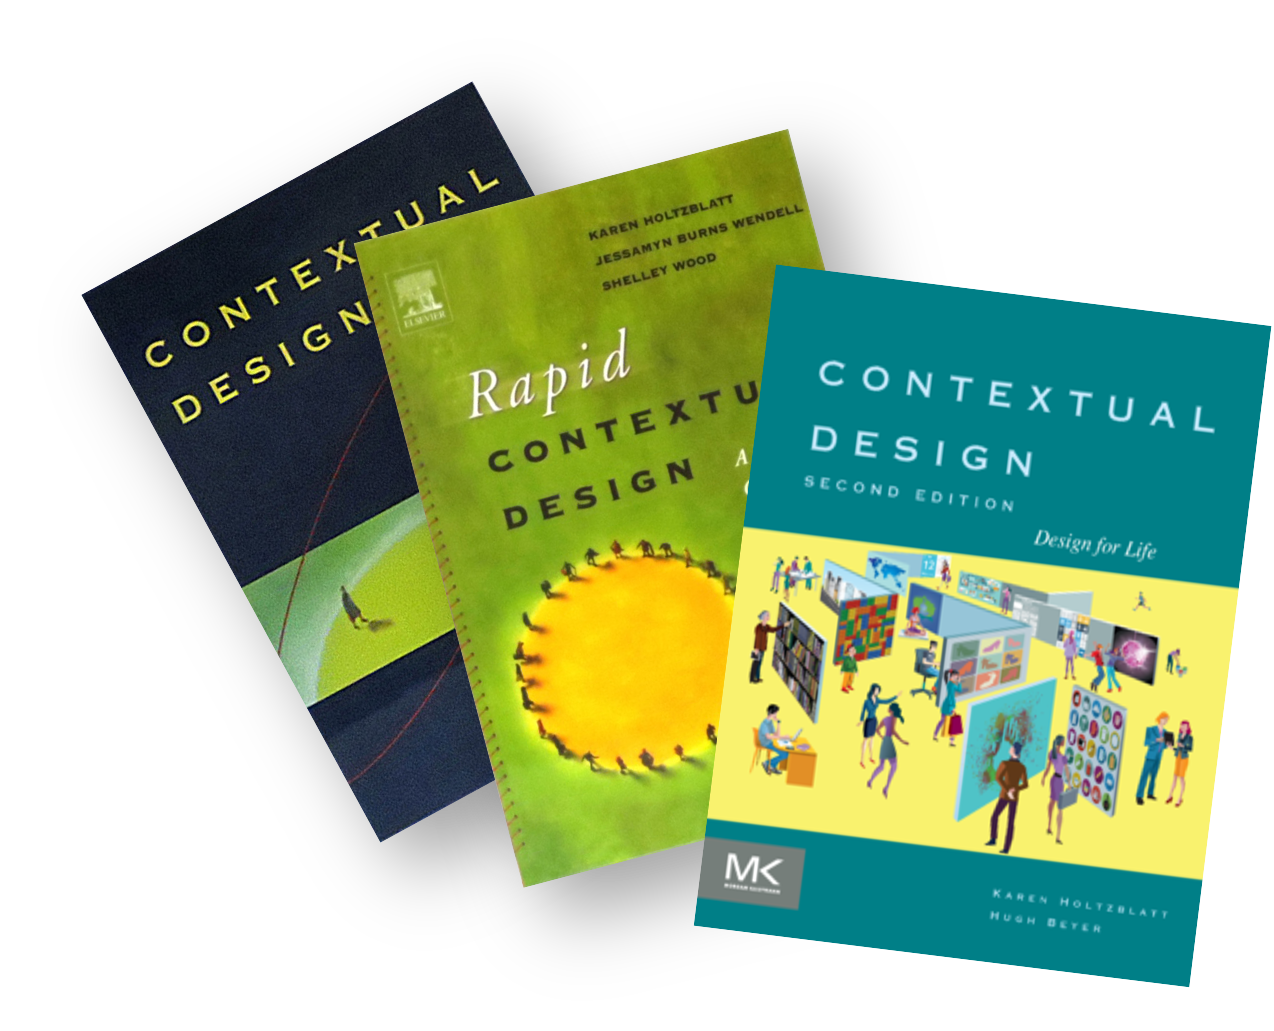 Contextual Design Book